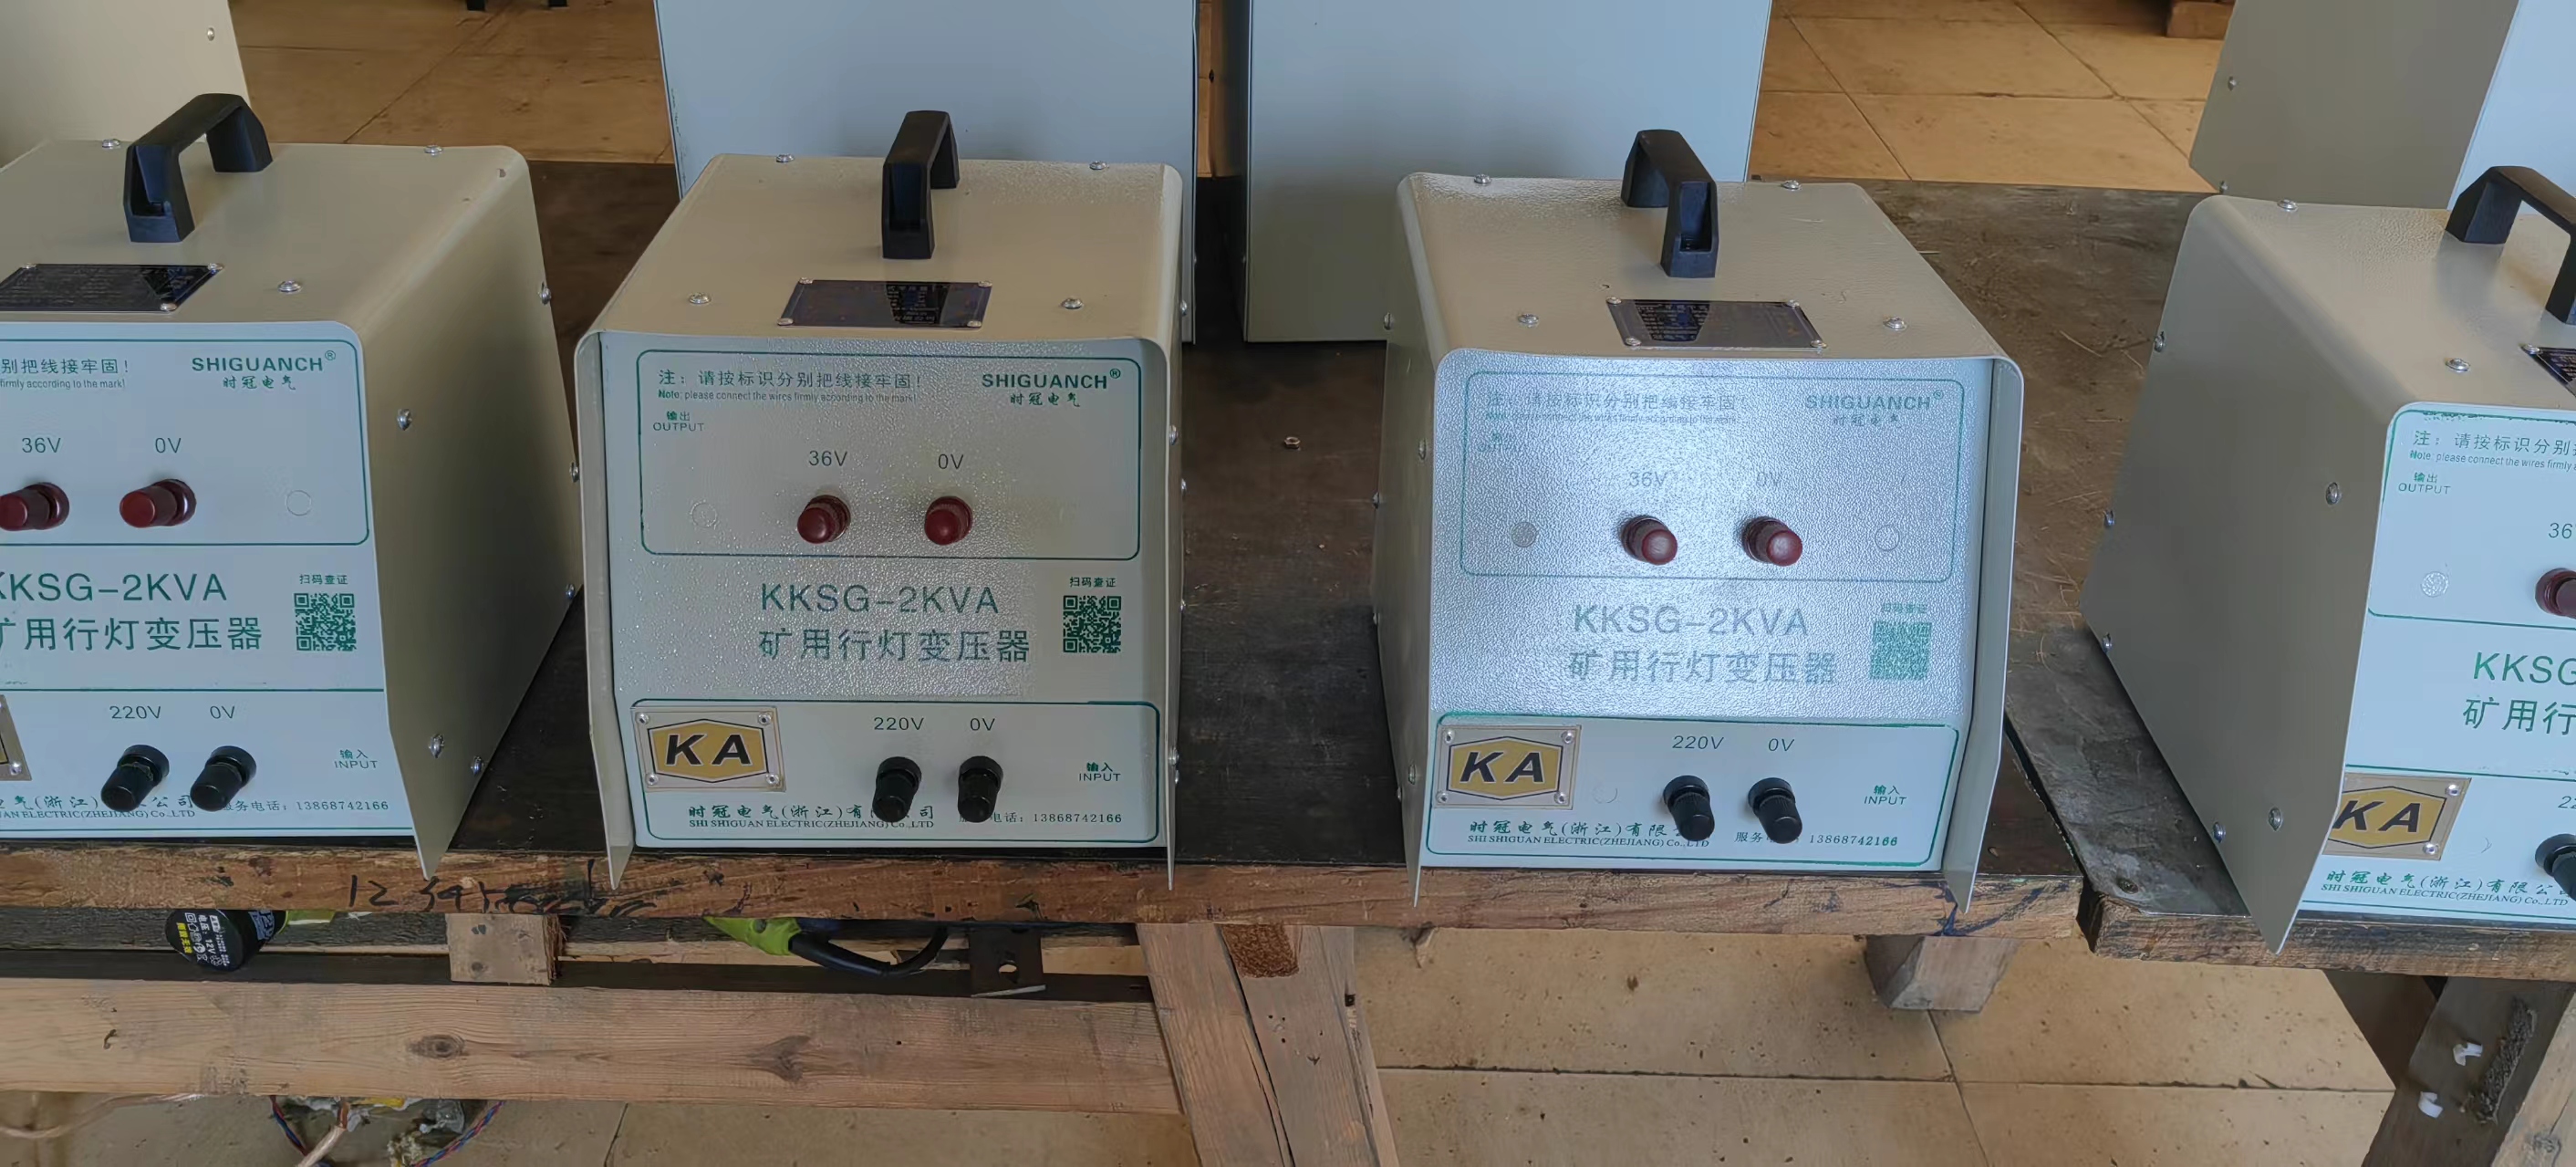 KKSG-2KVA行灯变压器厂家电话、报价、厂价出售、联系电话